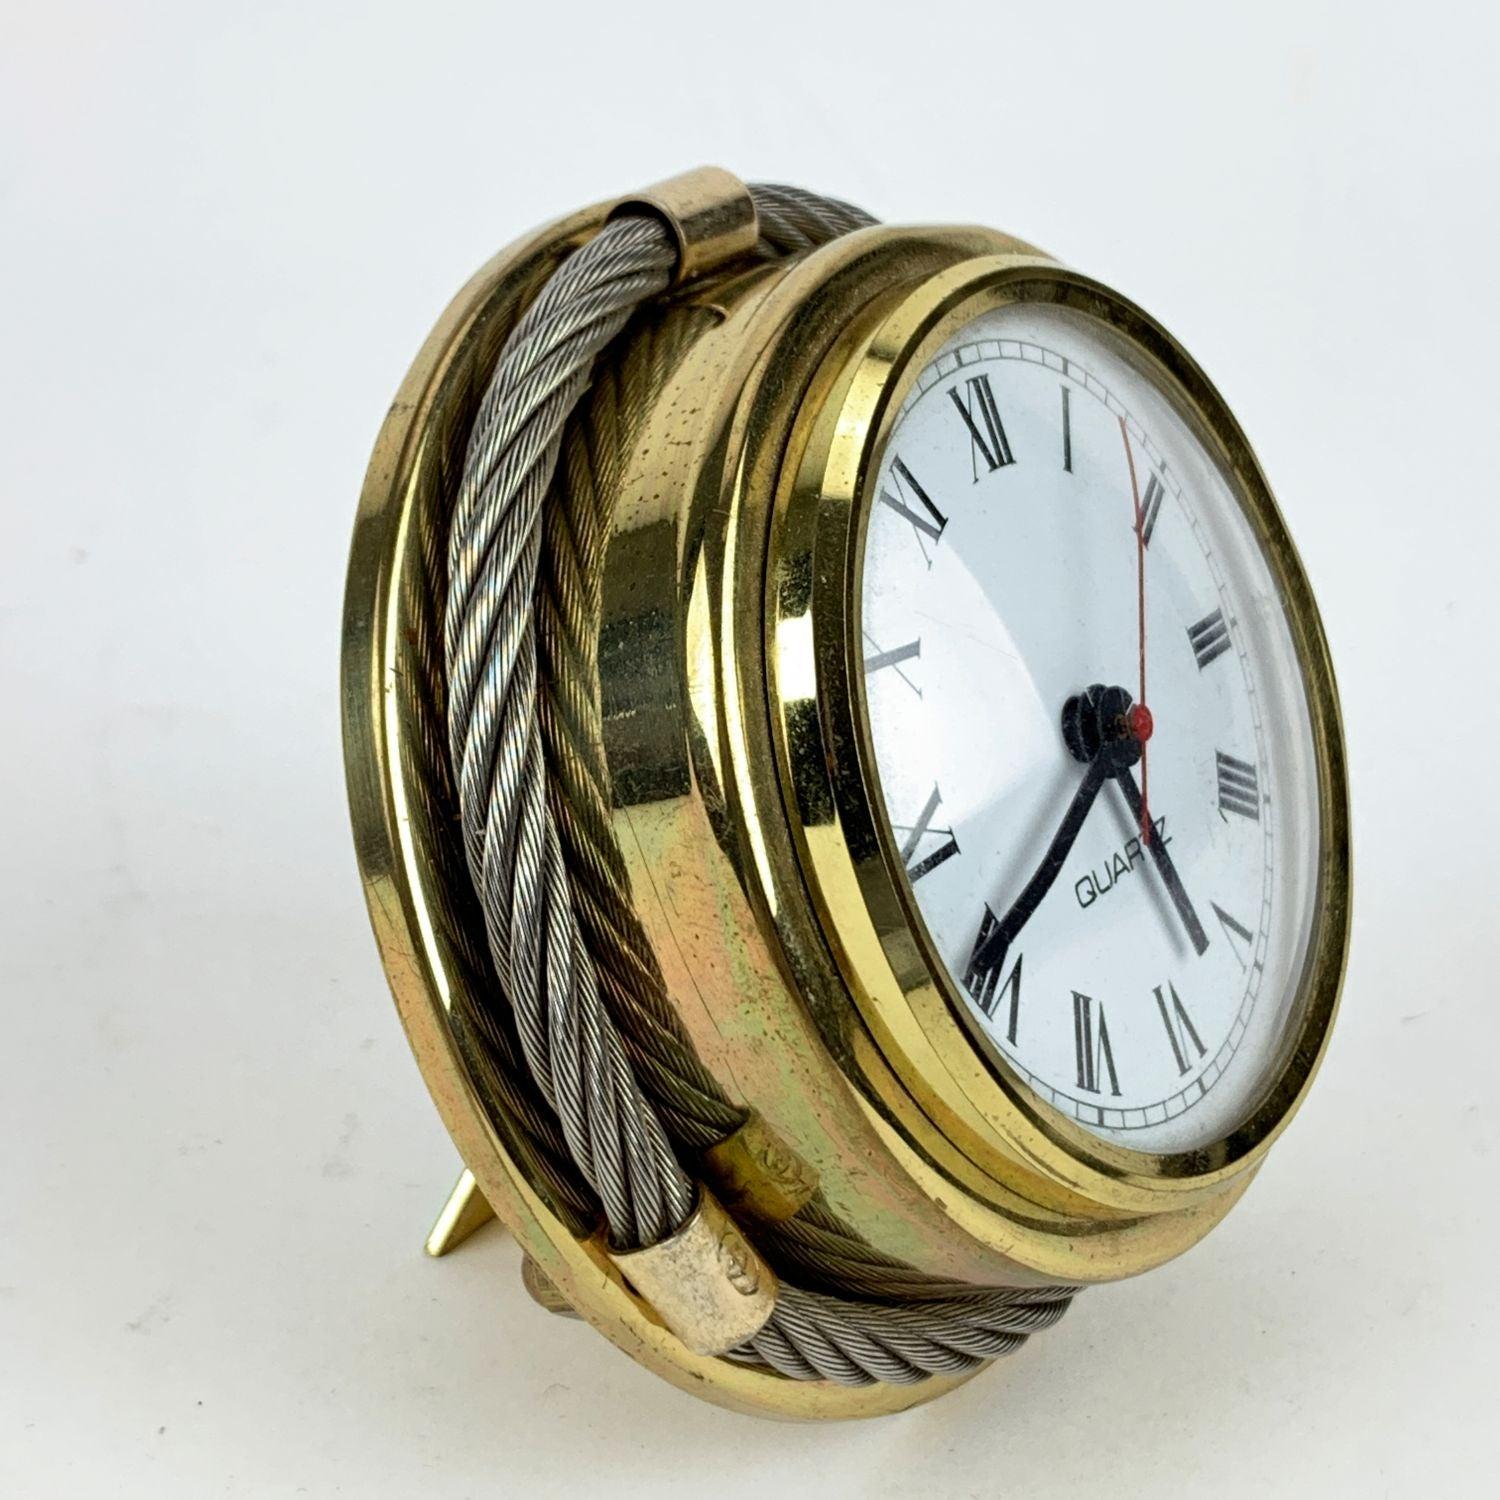 Horloge de bureau vintage rare de Gucci. Métal doré et argenté. De forme ronde. Mouvement à quartz. Chiffres romains. La mention 